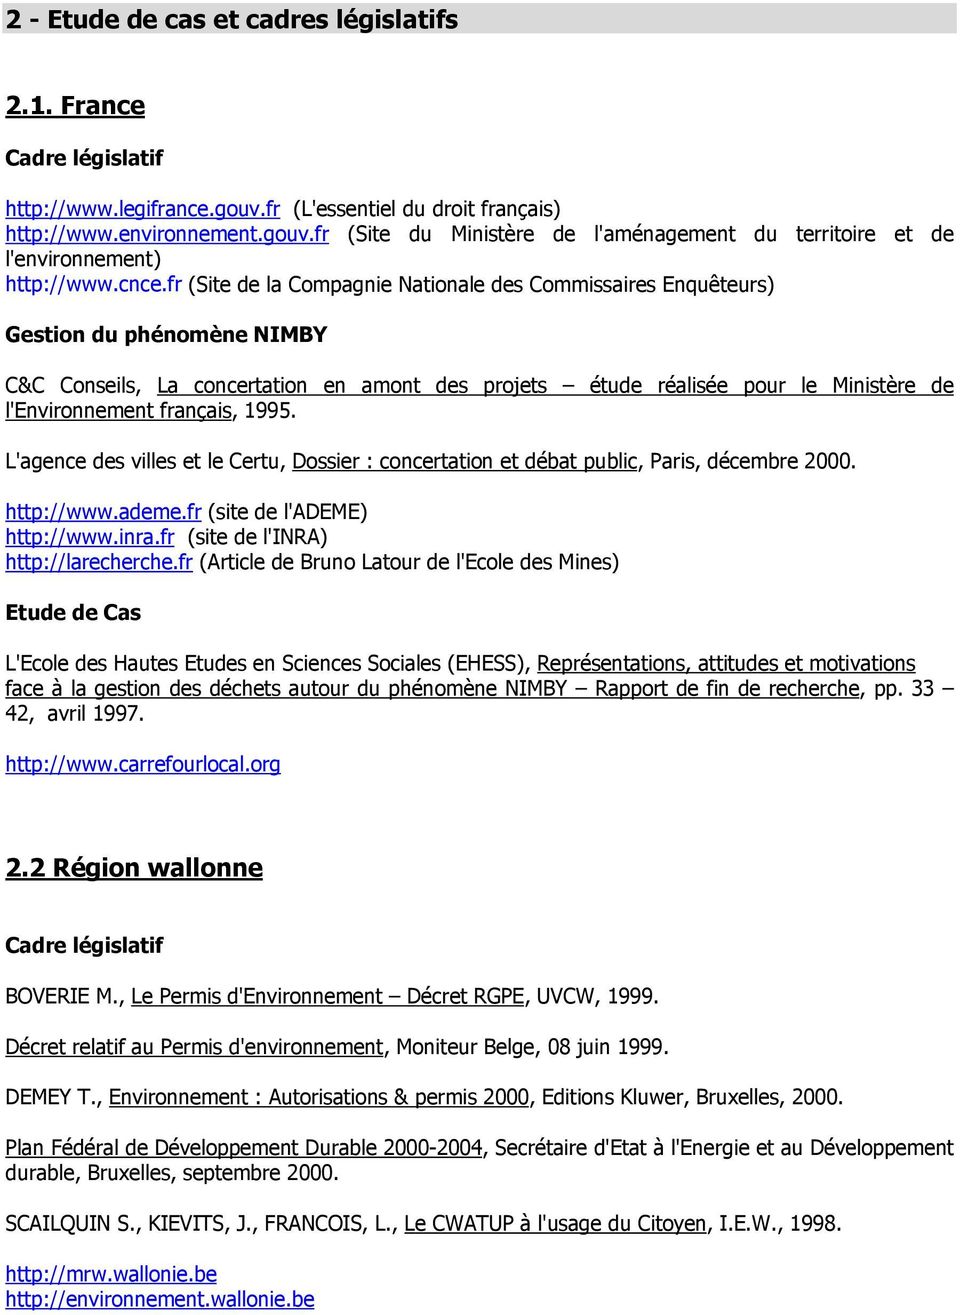 français, 1995. L'agence des villes et le Certu, Dossier : concertation et débat public, Paris, décembre 2000. http://www.ademe.fr (site de l'ademe) http://www.inra.